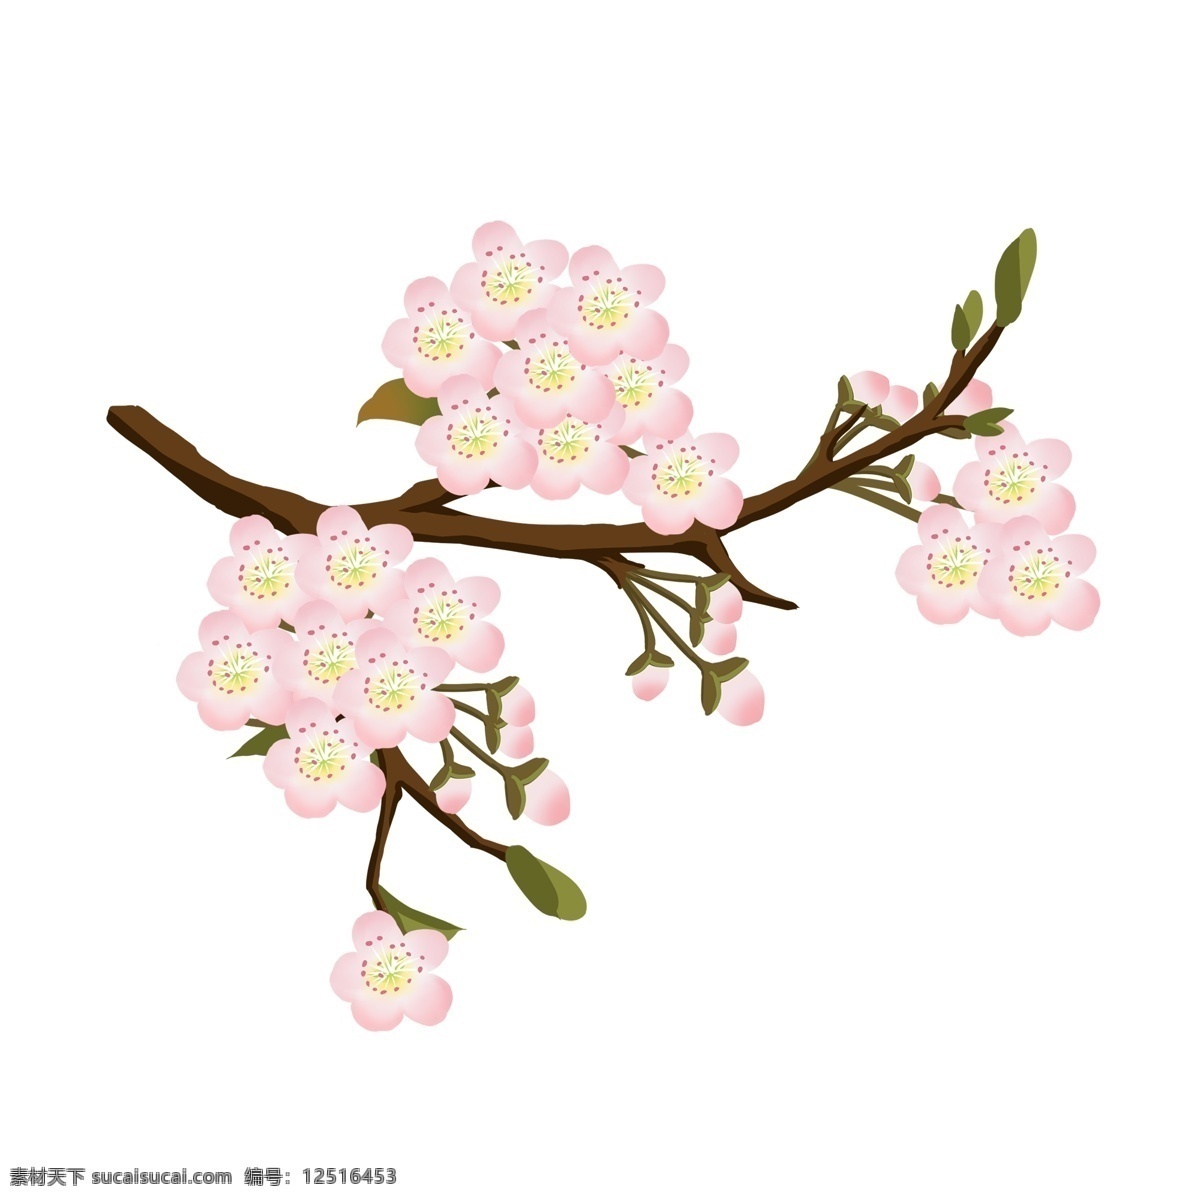 梨花 粉色 花朵 花枝 花卉 手绘 春季 装饰 简约 风